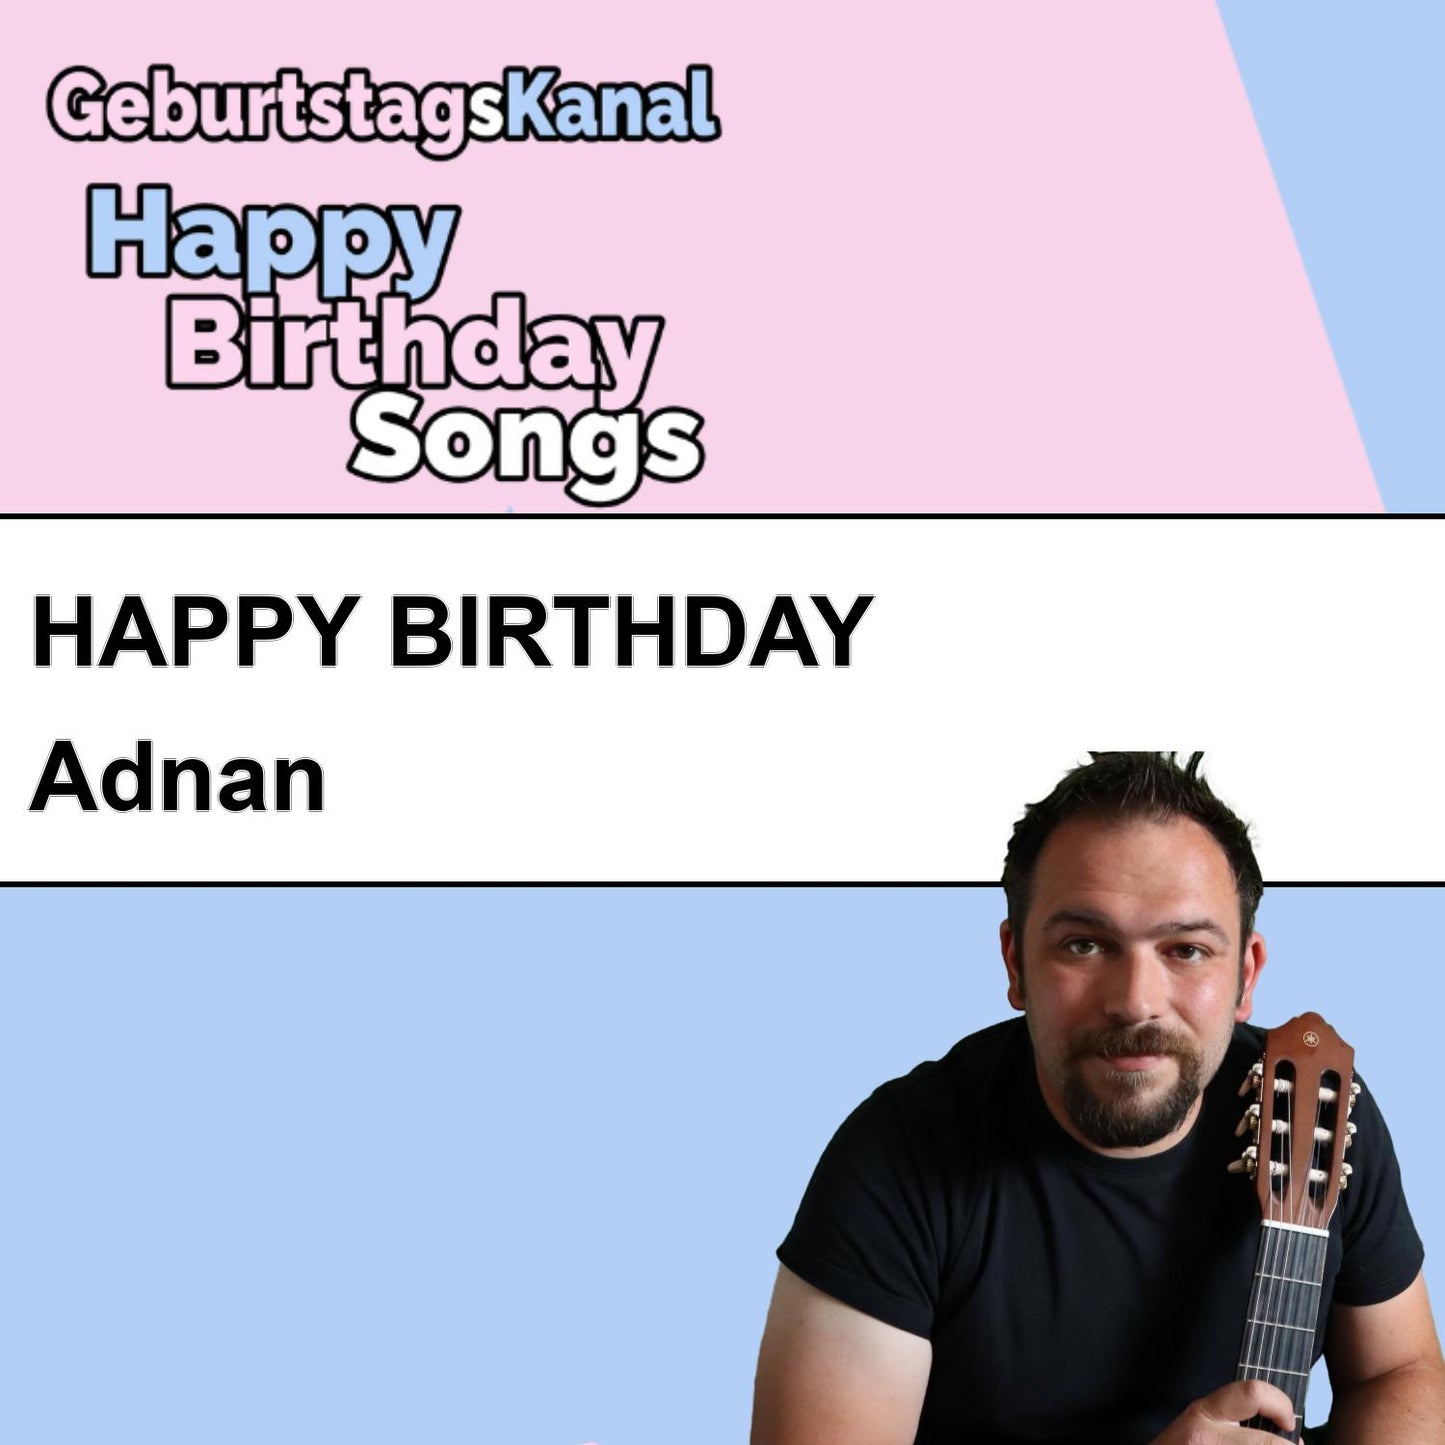 Produktbild Happy Birthday to you Adnan mit Wunschgrußbotschaft